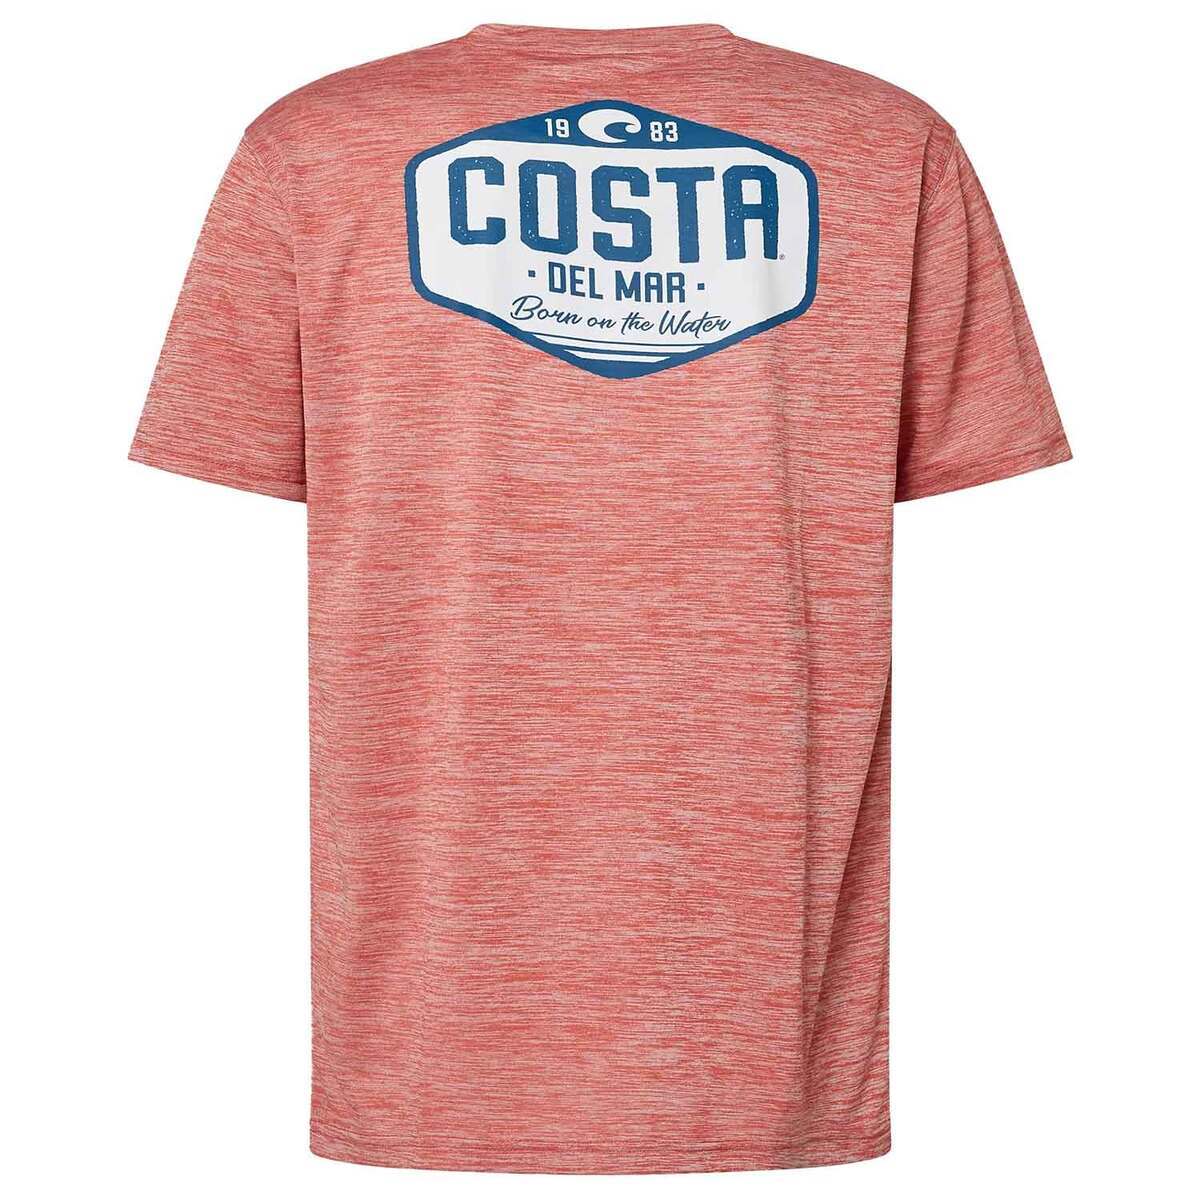 Costa Men's Tech Morgan Short Sleeve Fishing Shirt